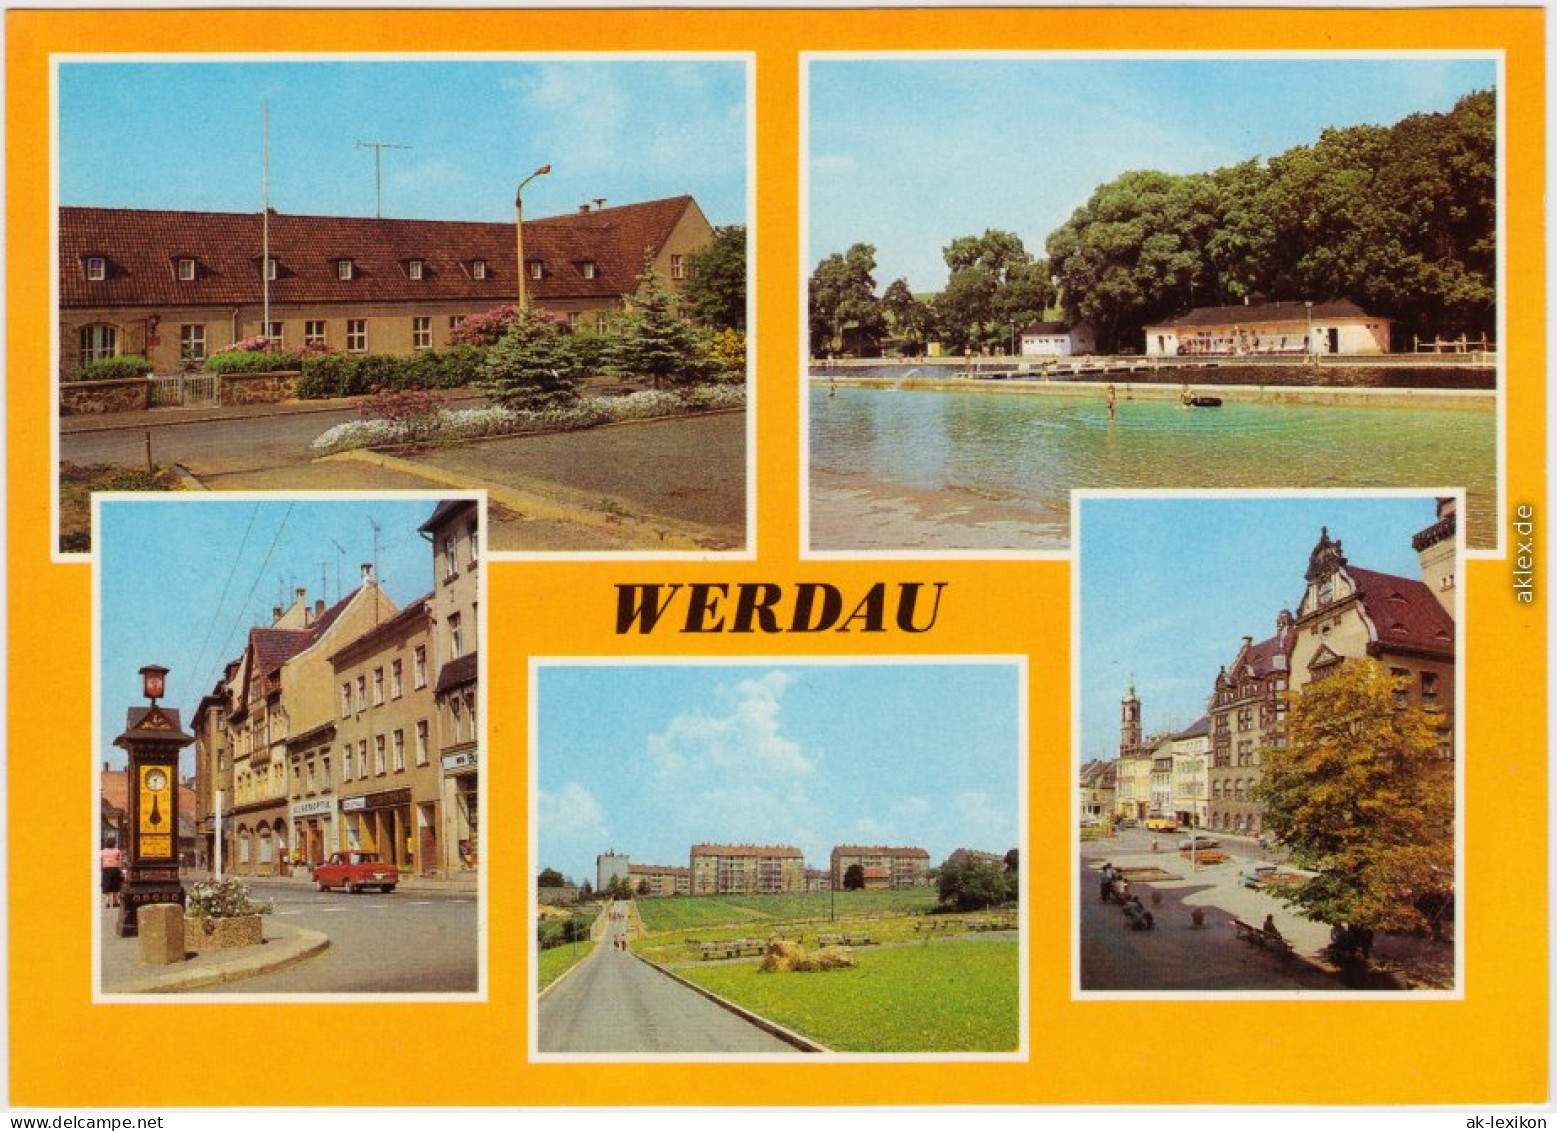 Werdau Sportschule, Bad, August-Bebel-Straße, Neubauten, Markt 1981 - Werdau